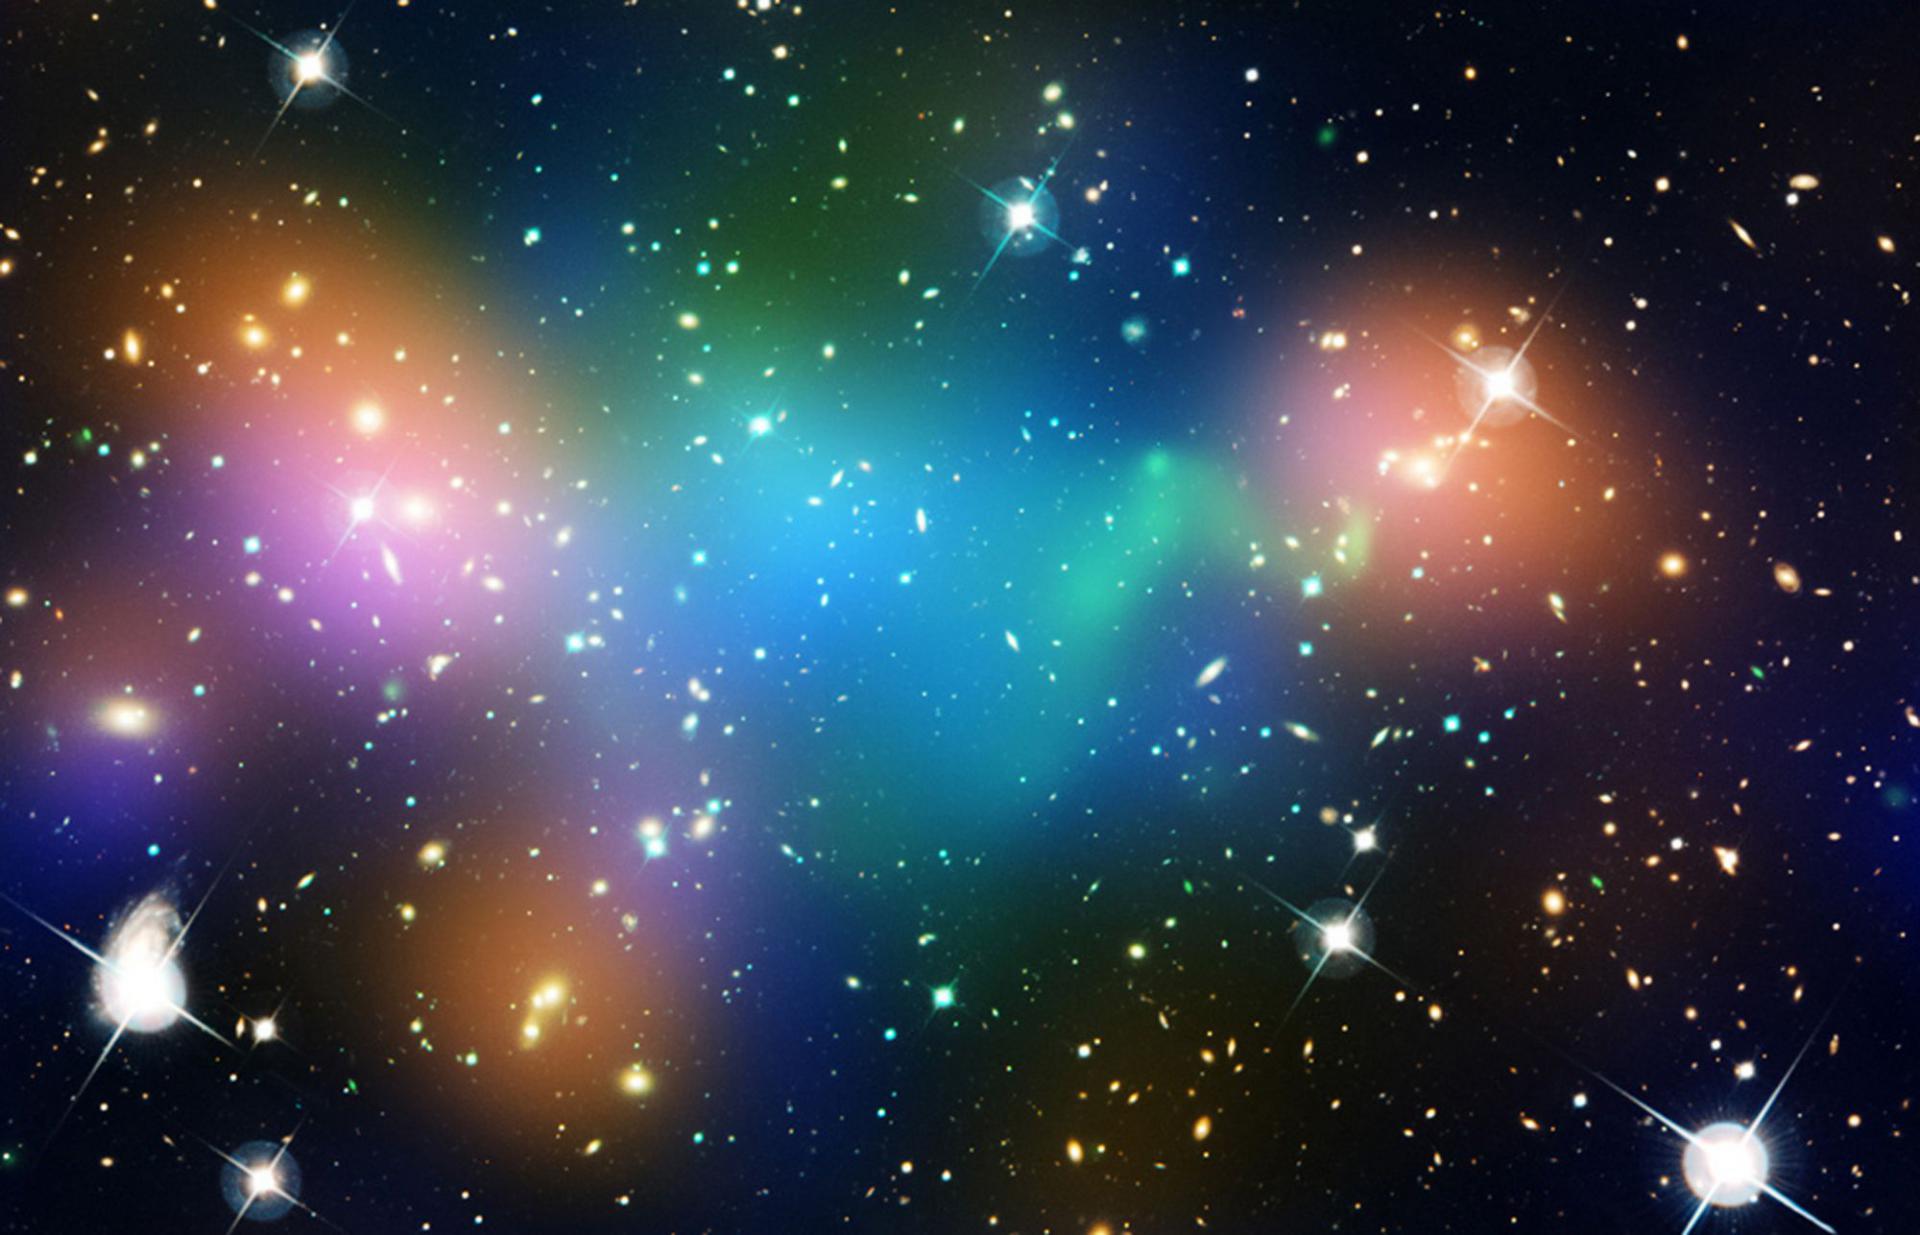 المجرات والنجوم والغازات الكونية كما صورتها وكالة الفضاء الأميركية